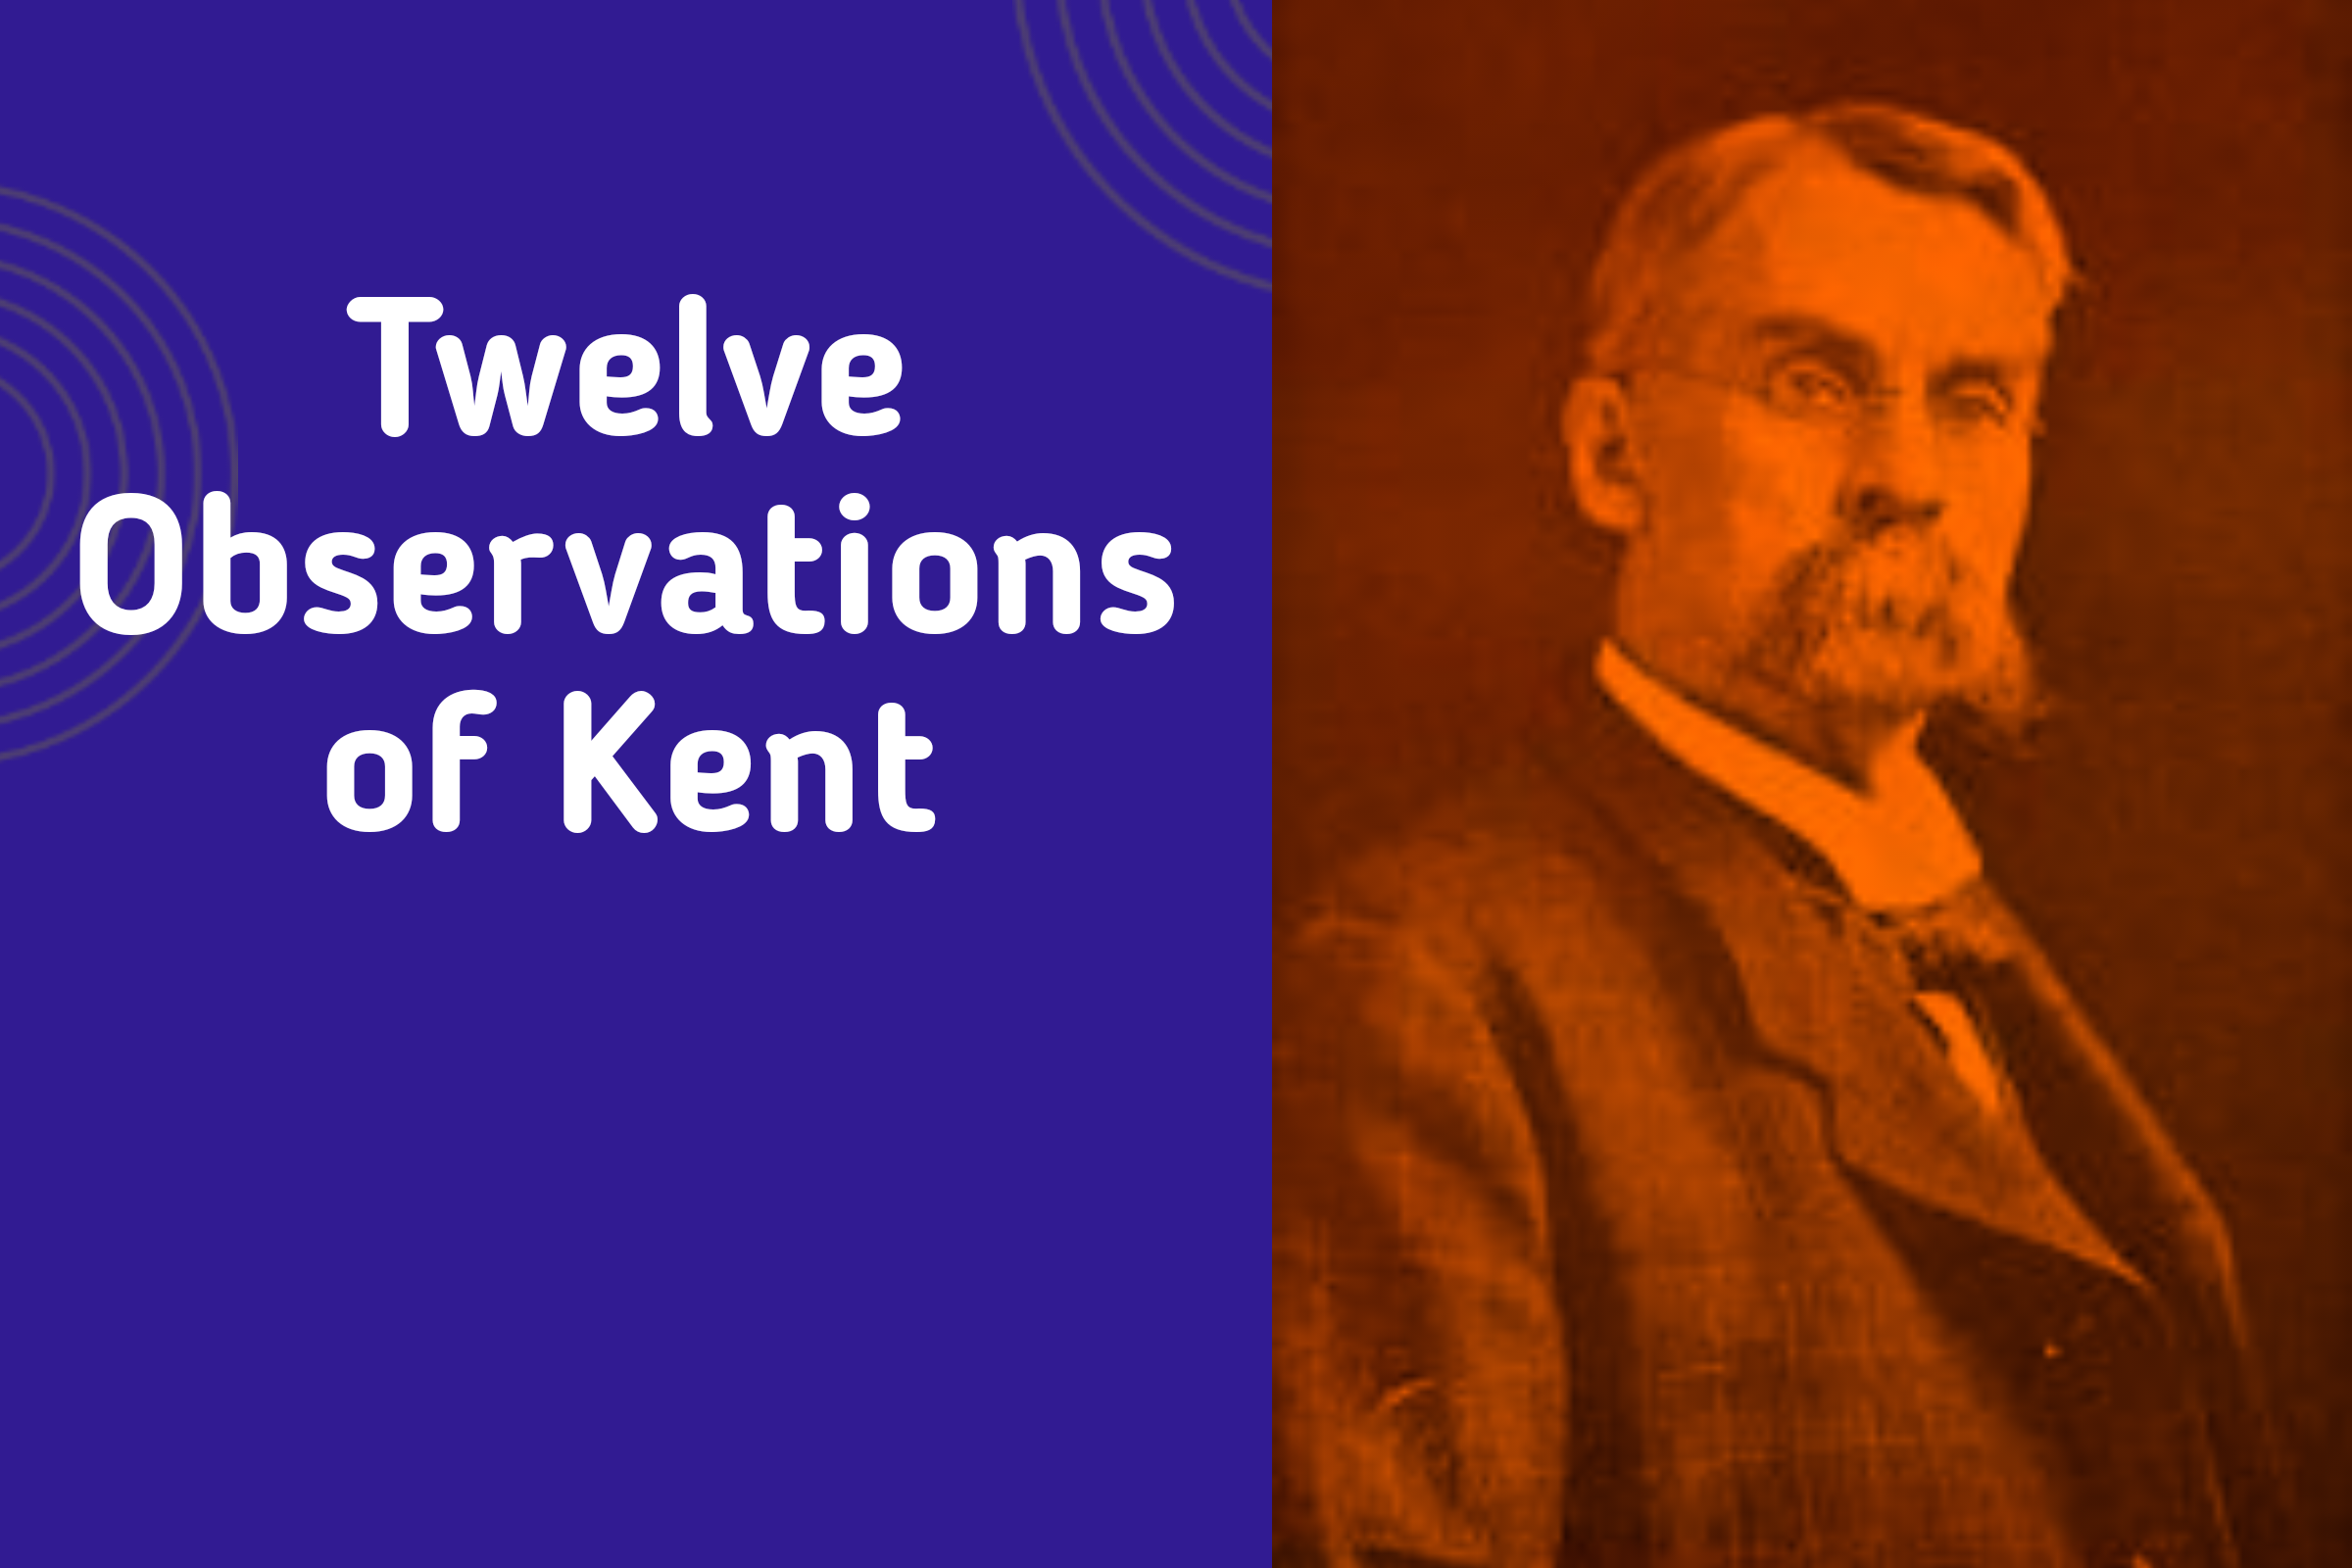 Kent's 12 observations